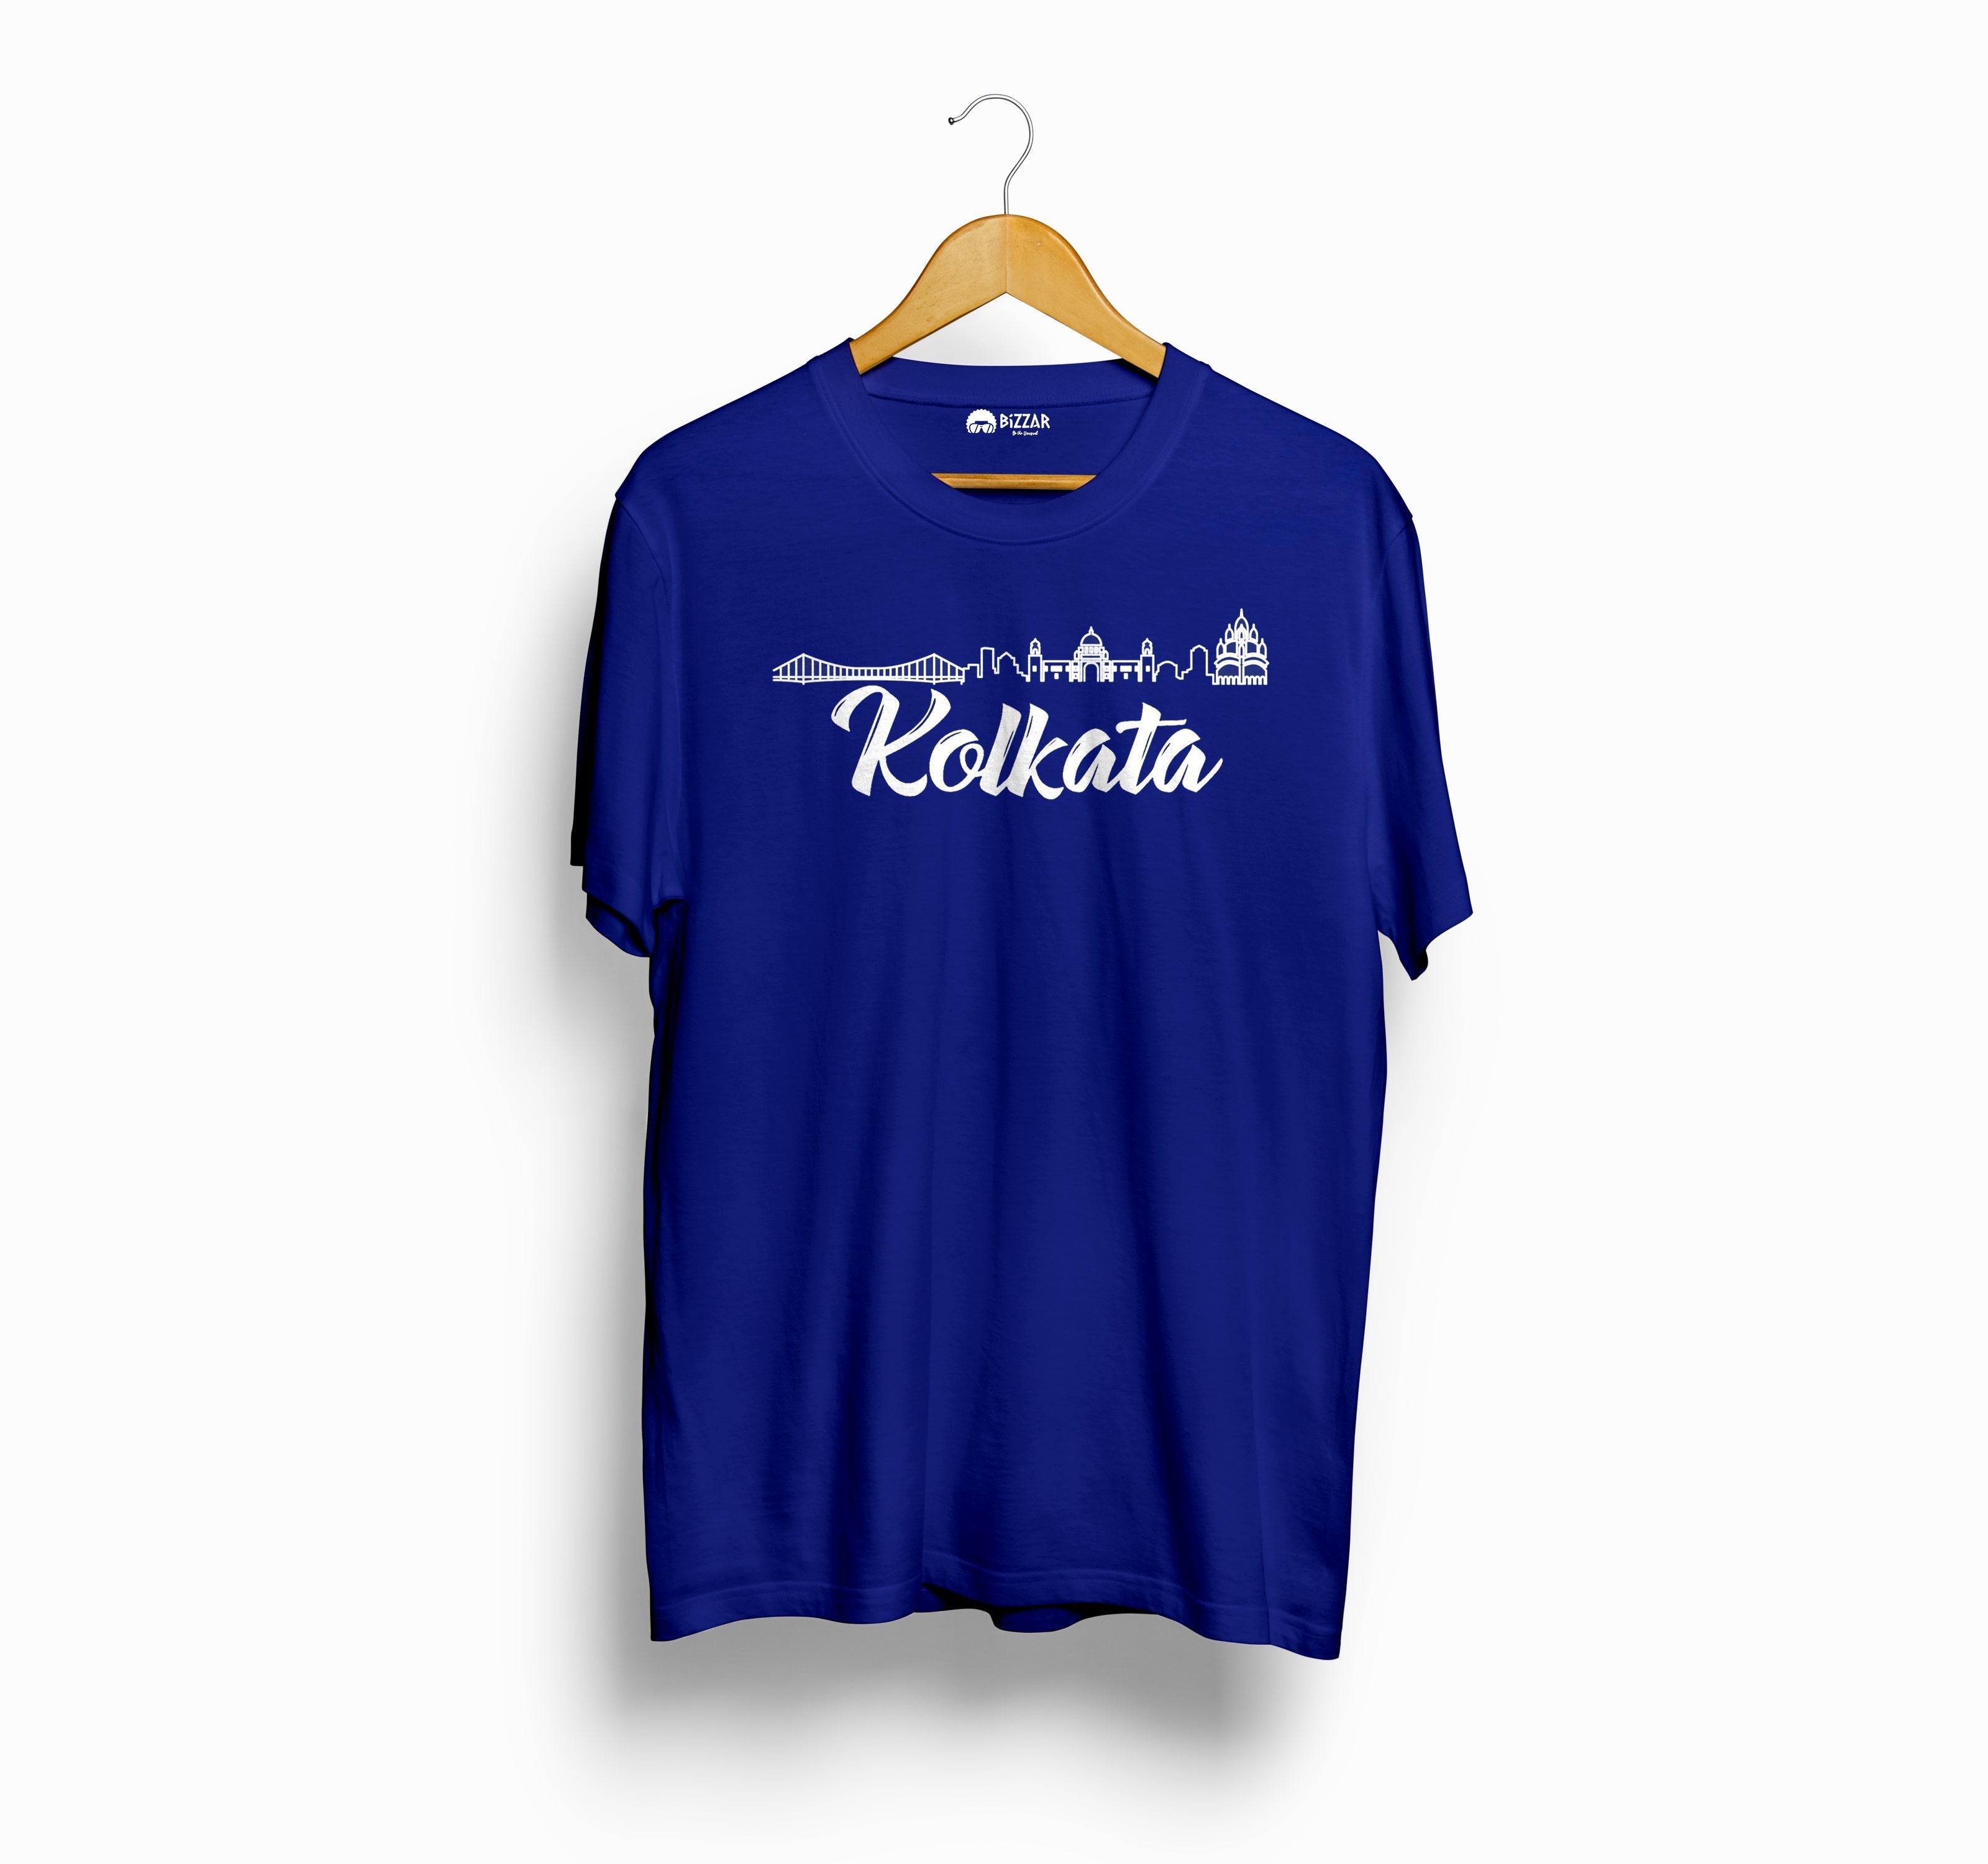 Bizzar's Kolkata Royal Blue T-Shirt